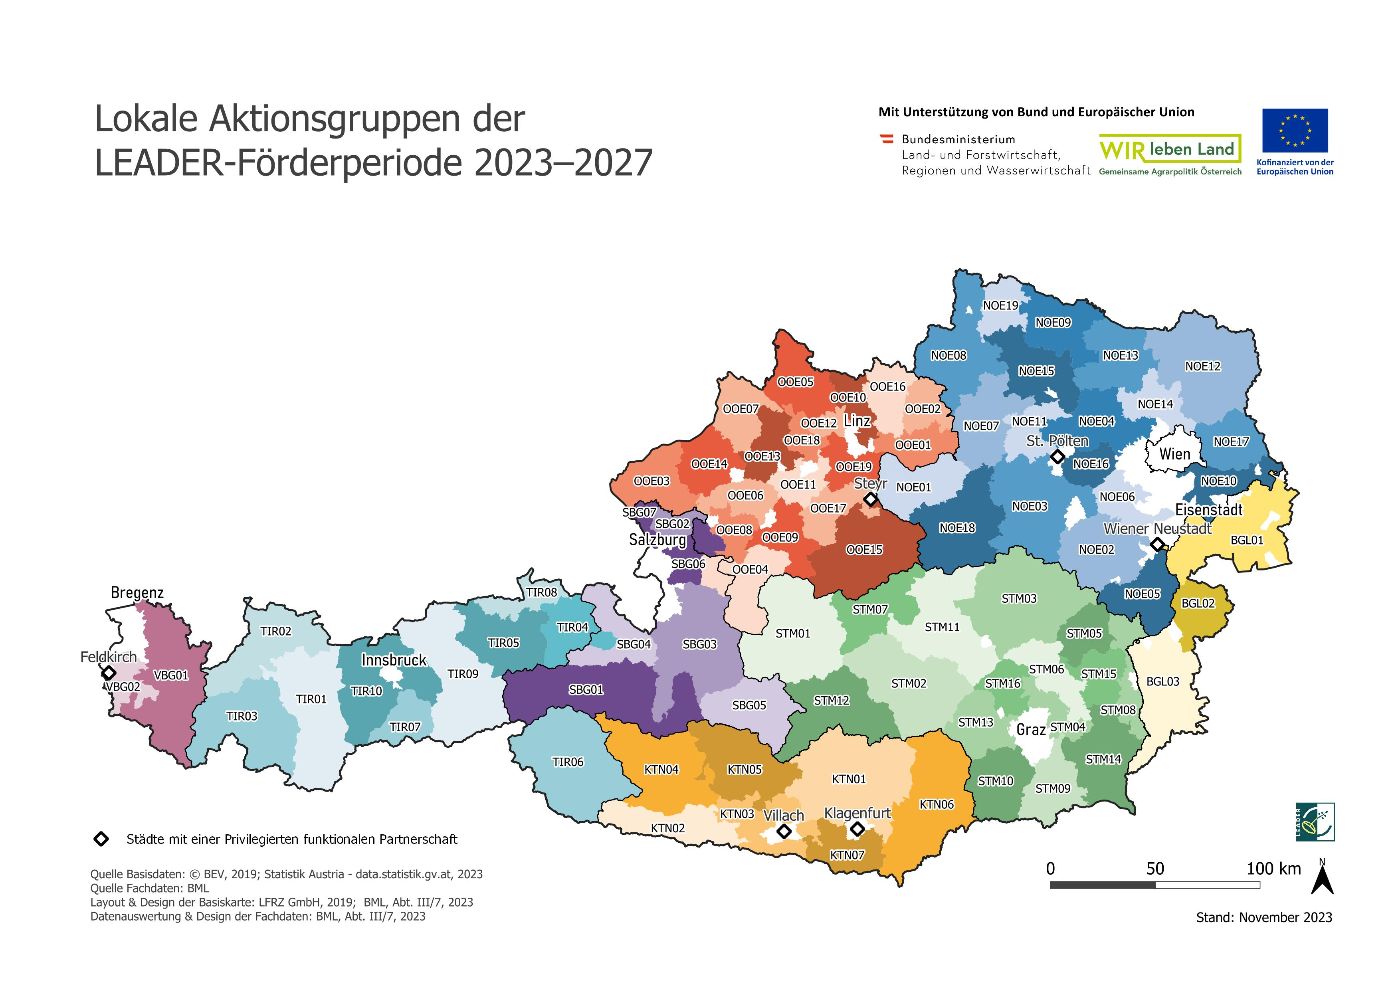 Die Karte zeigt alle LEADER-Regionen in Österreich inklusive den Städten, die Teil einer Privilegierte funktionalen Partnerschaft sind. 